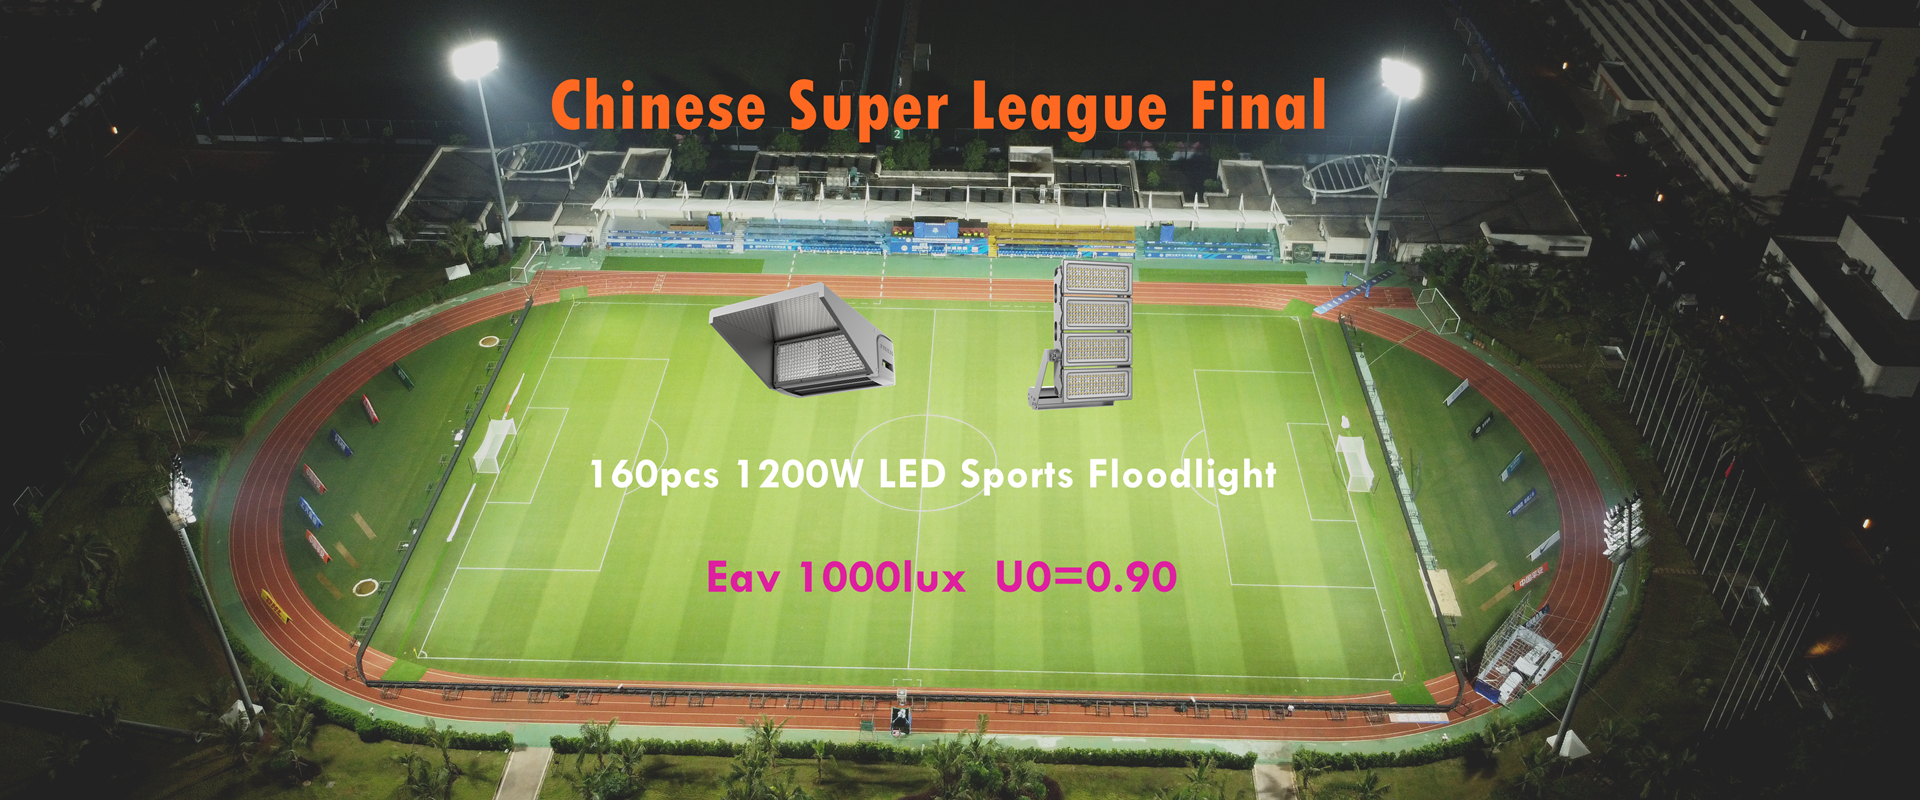 Светодиодный прожектор мощностью 1200 Вт для китайской суперлиги 2022 года на футбольном стадионе Хайкоу